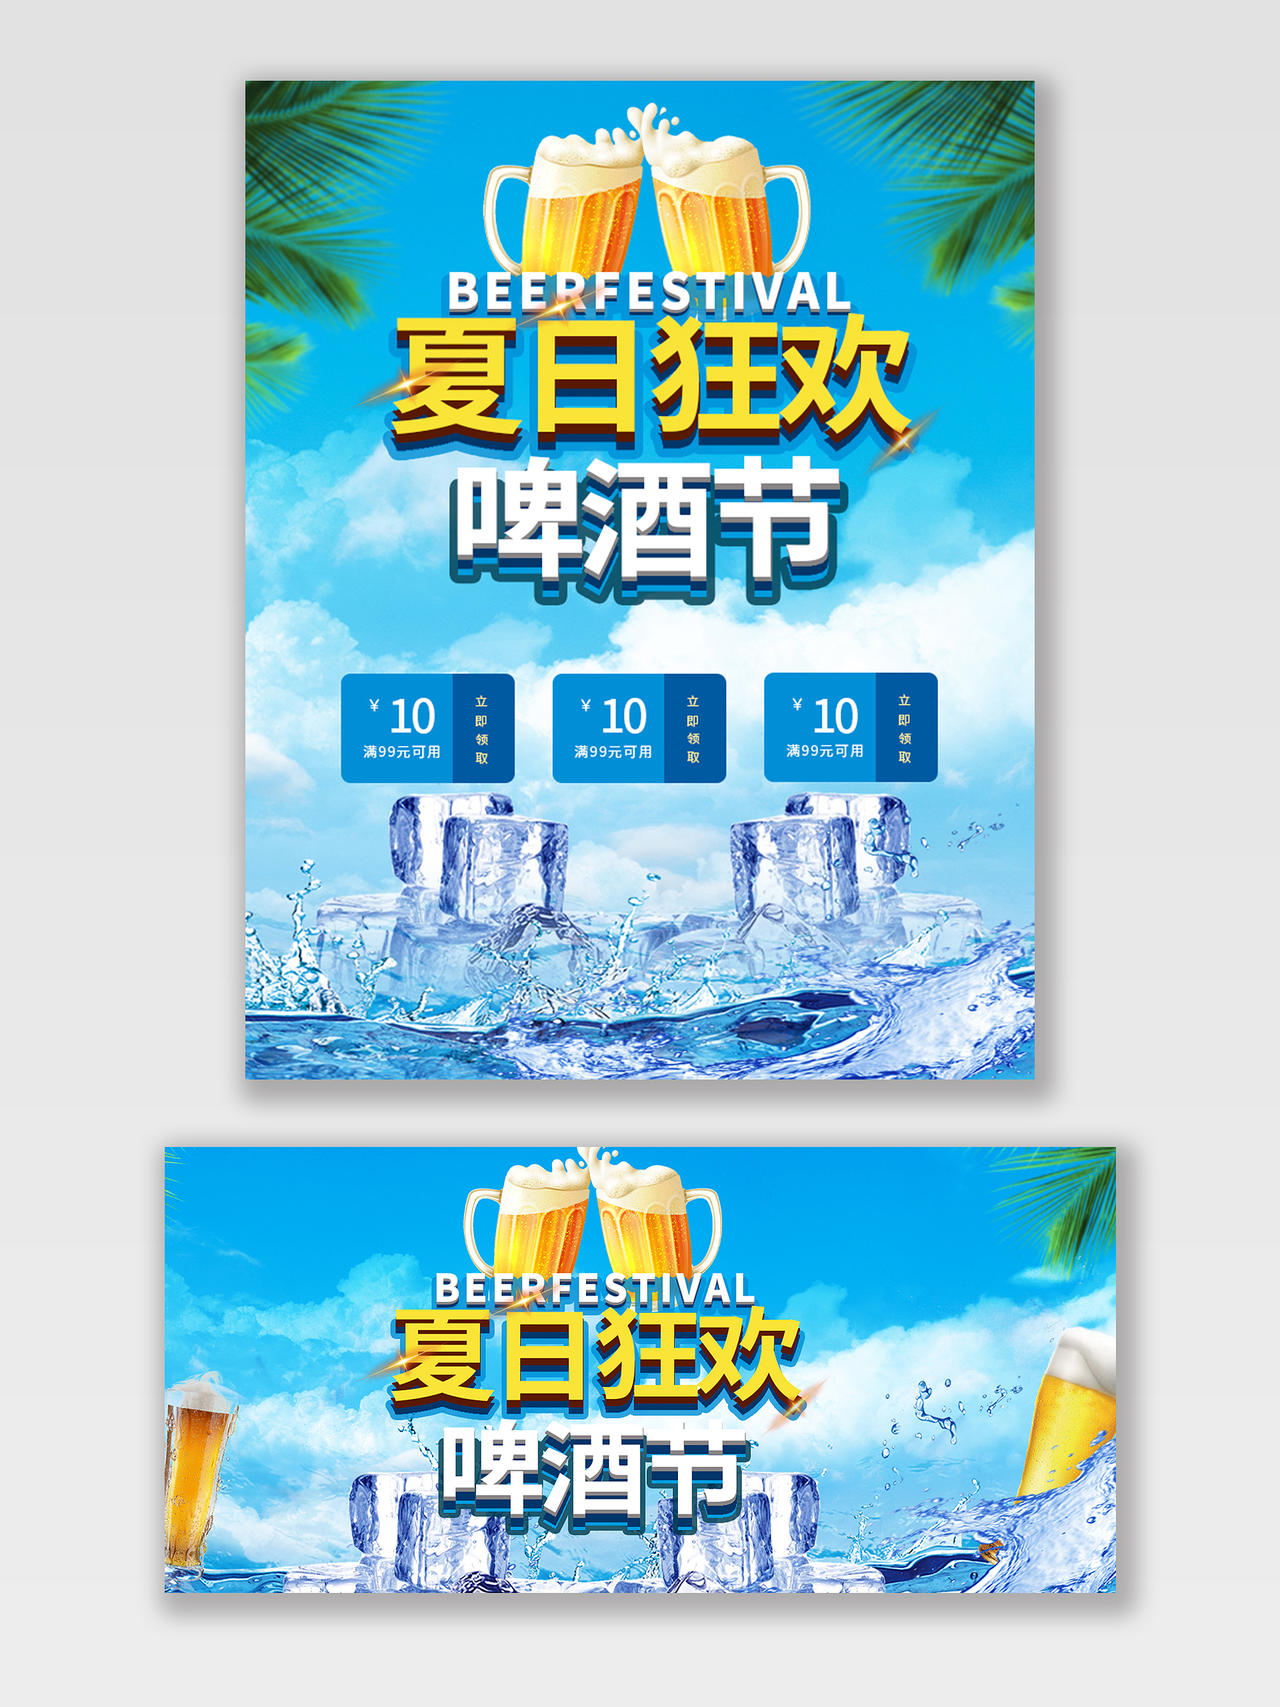 蓝色清爽狂欢夏日啤酒节天猫啤酒节海报banner